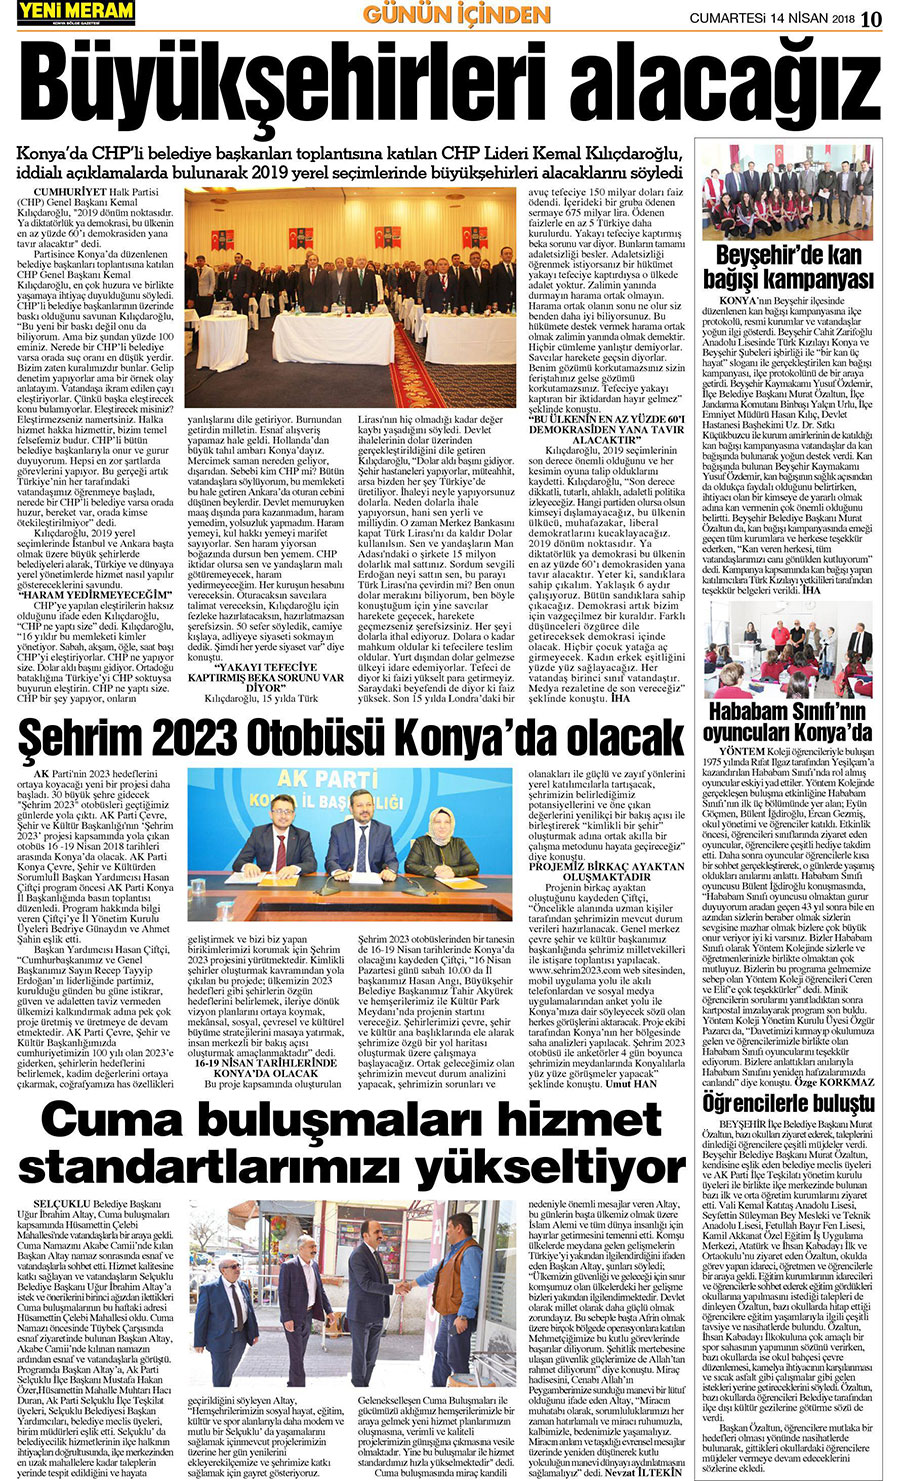 14 Nisan 2018 Yeni Meram Gazetesi